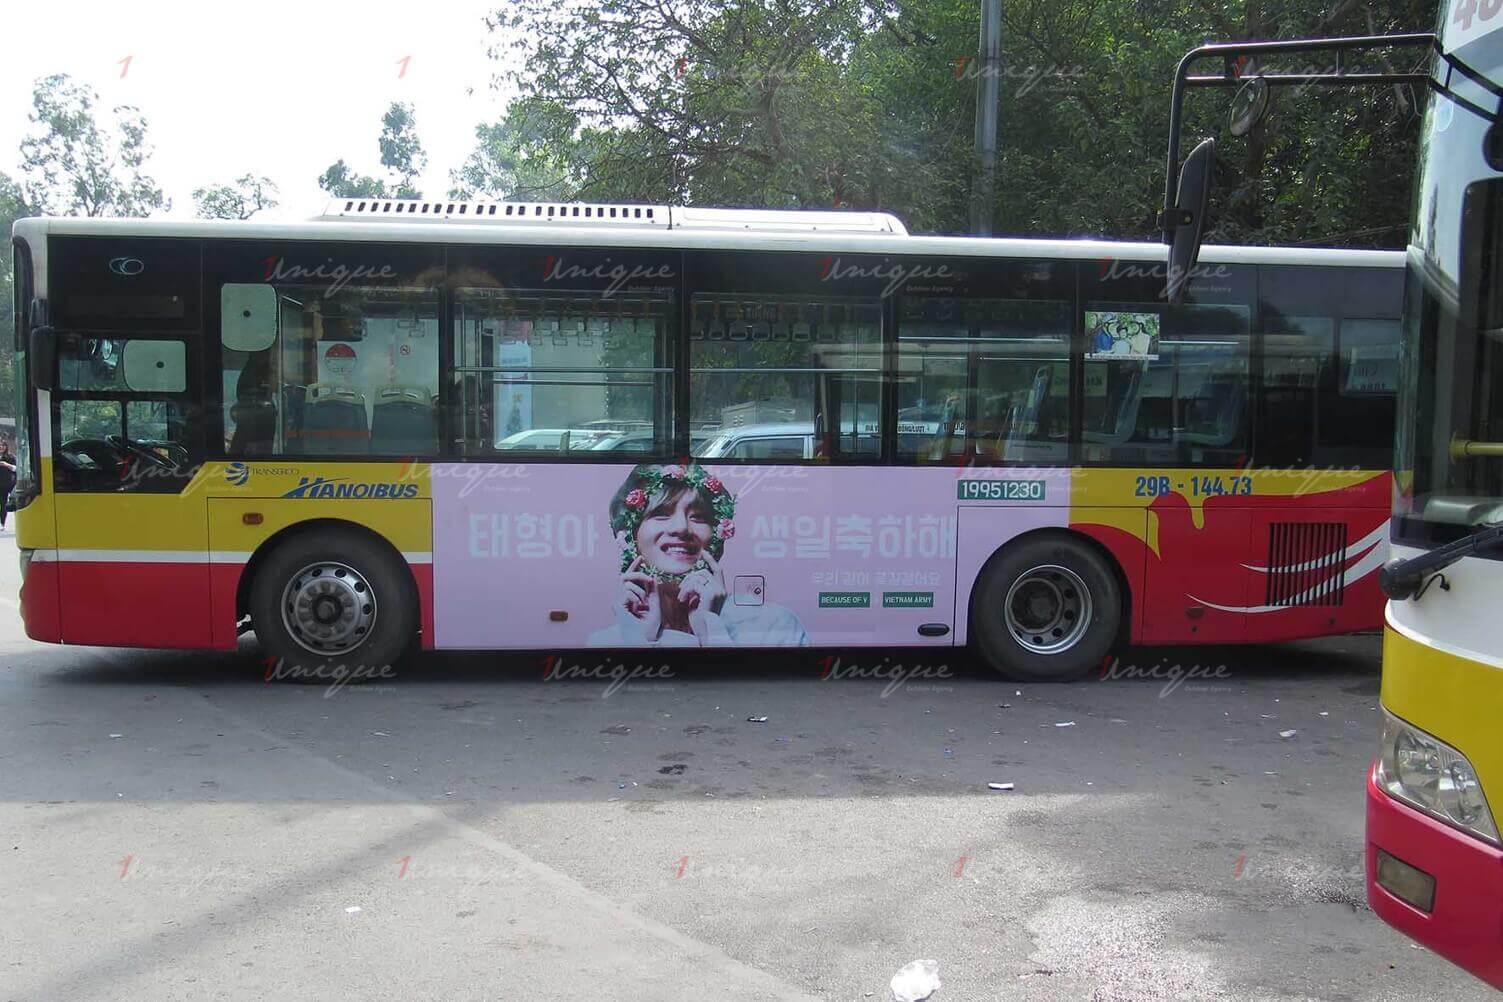 Chiến dịch quảng cáo trên xe bus chúc mừng sinh nhật Kim Taehyung BTS